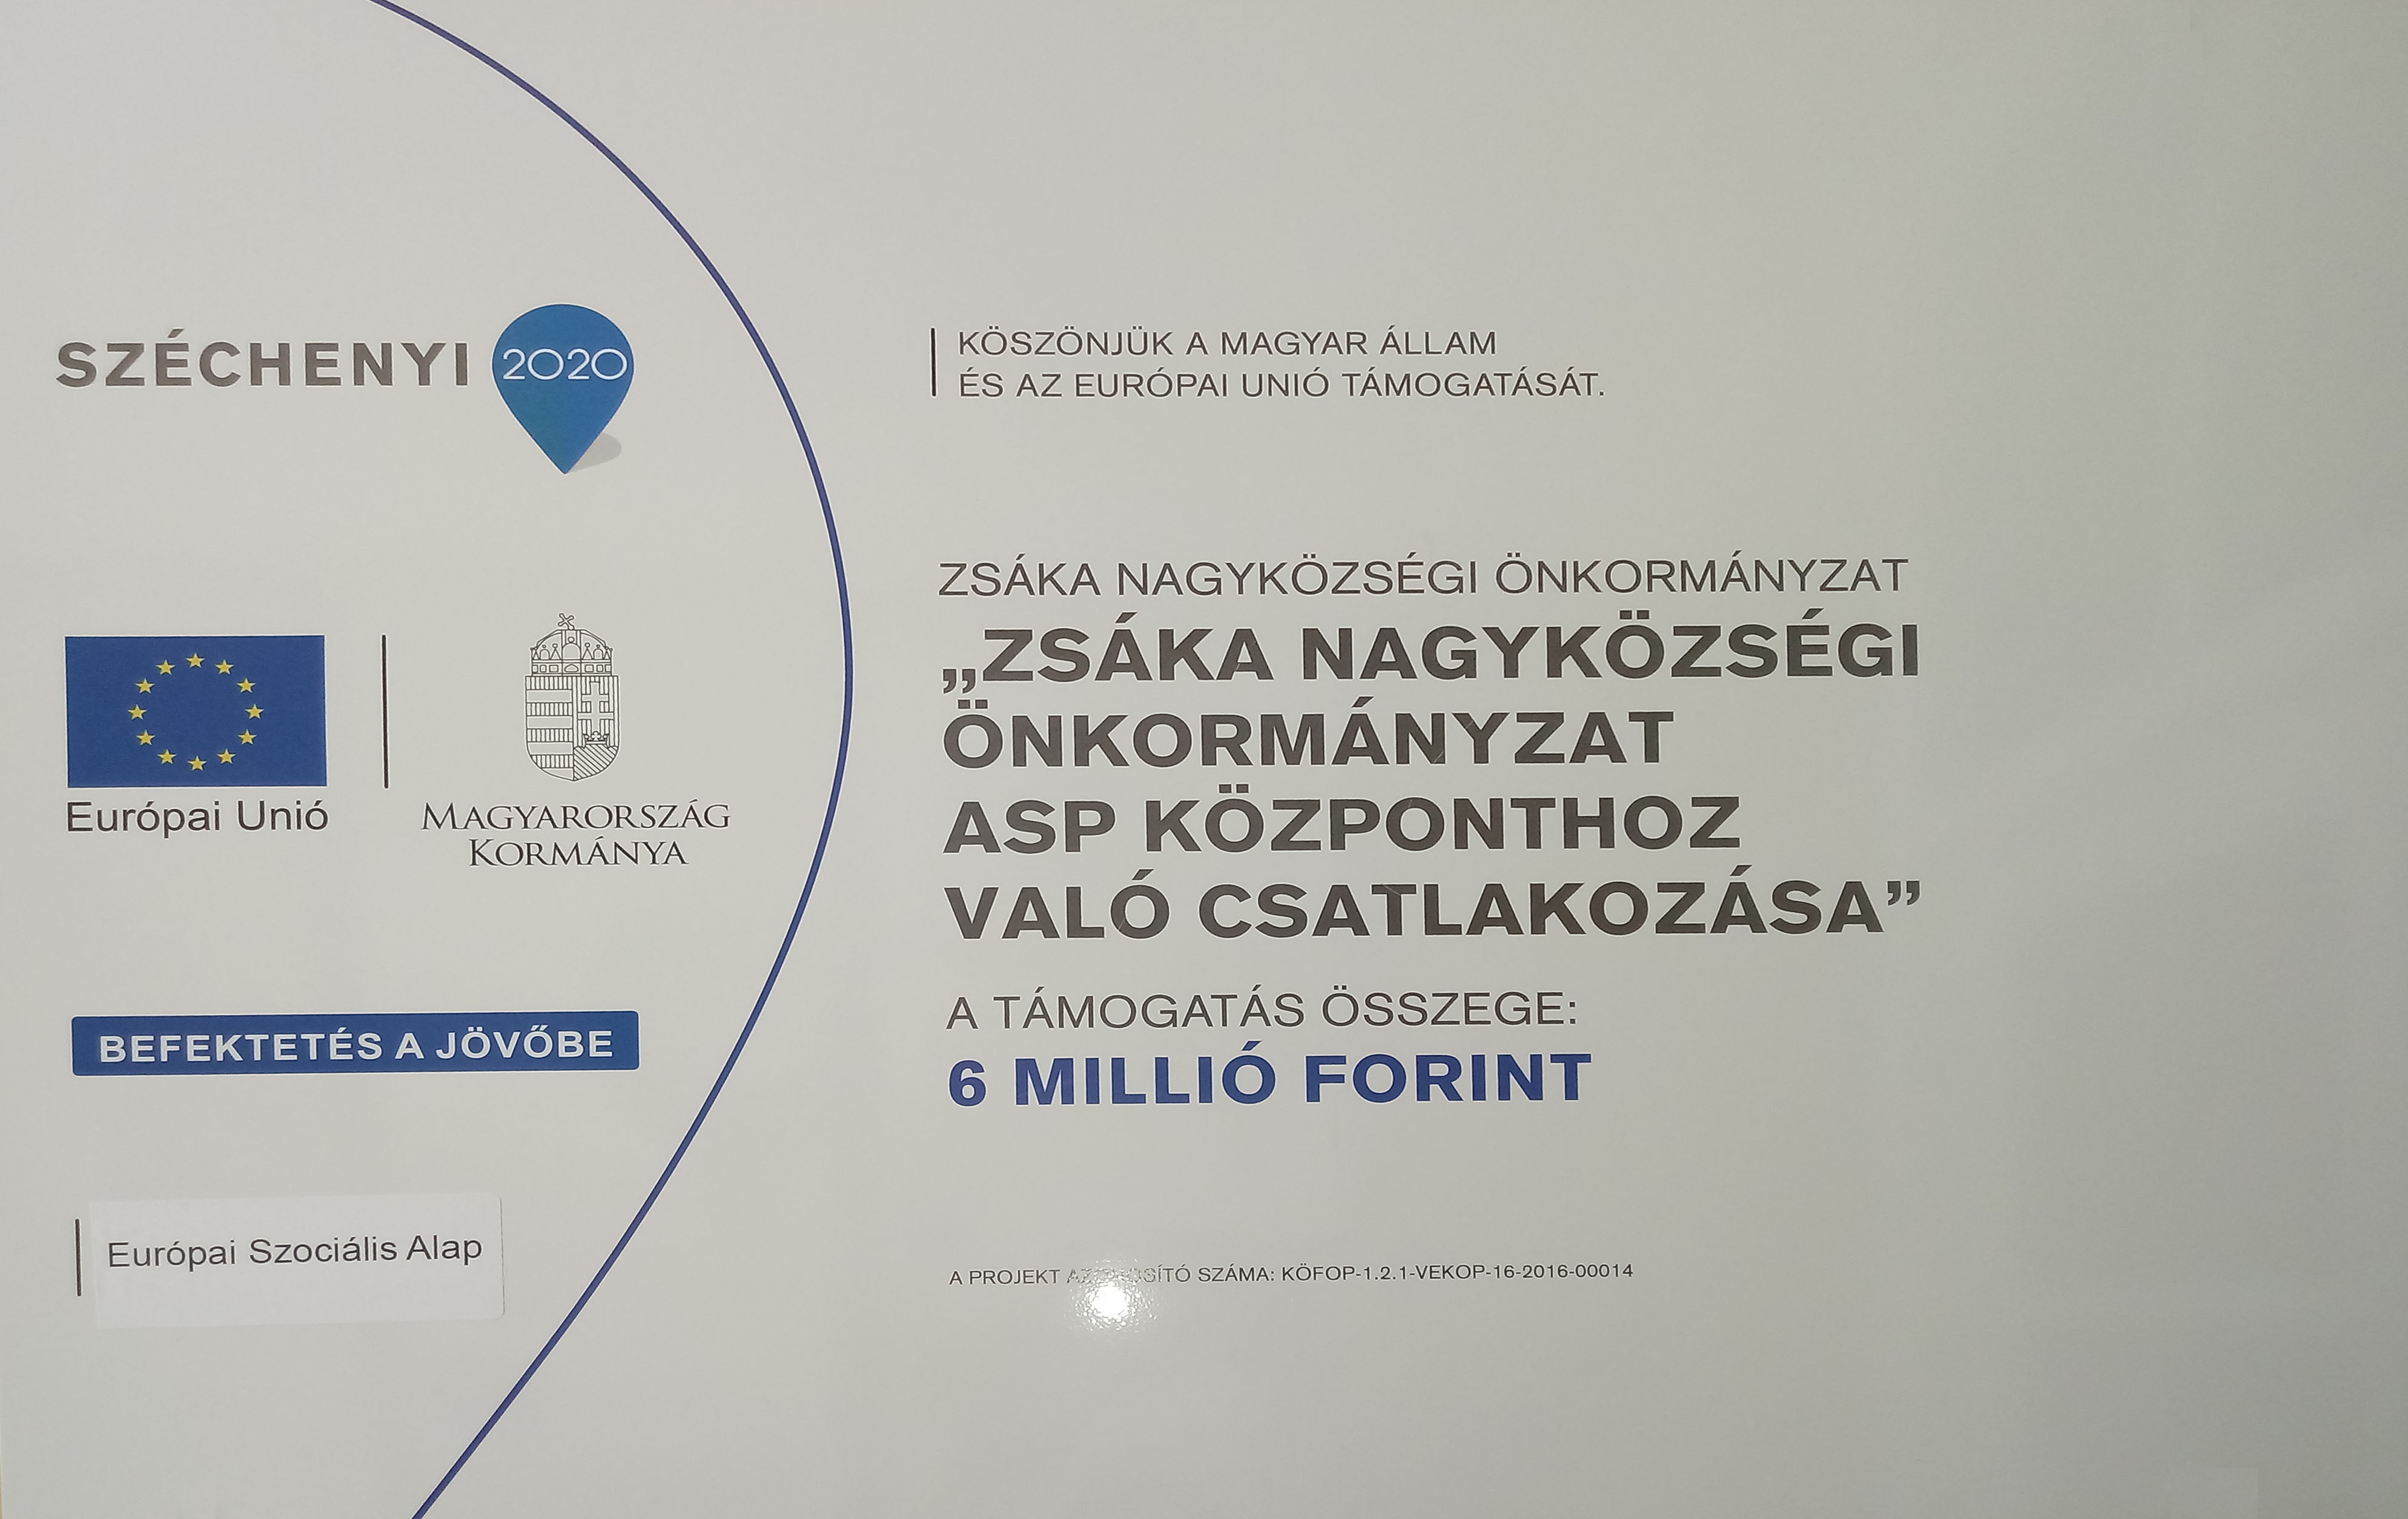 Zsáka Nagyközségi Önkormányzat ASP központhoz való csatlakozása